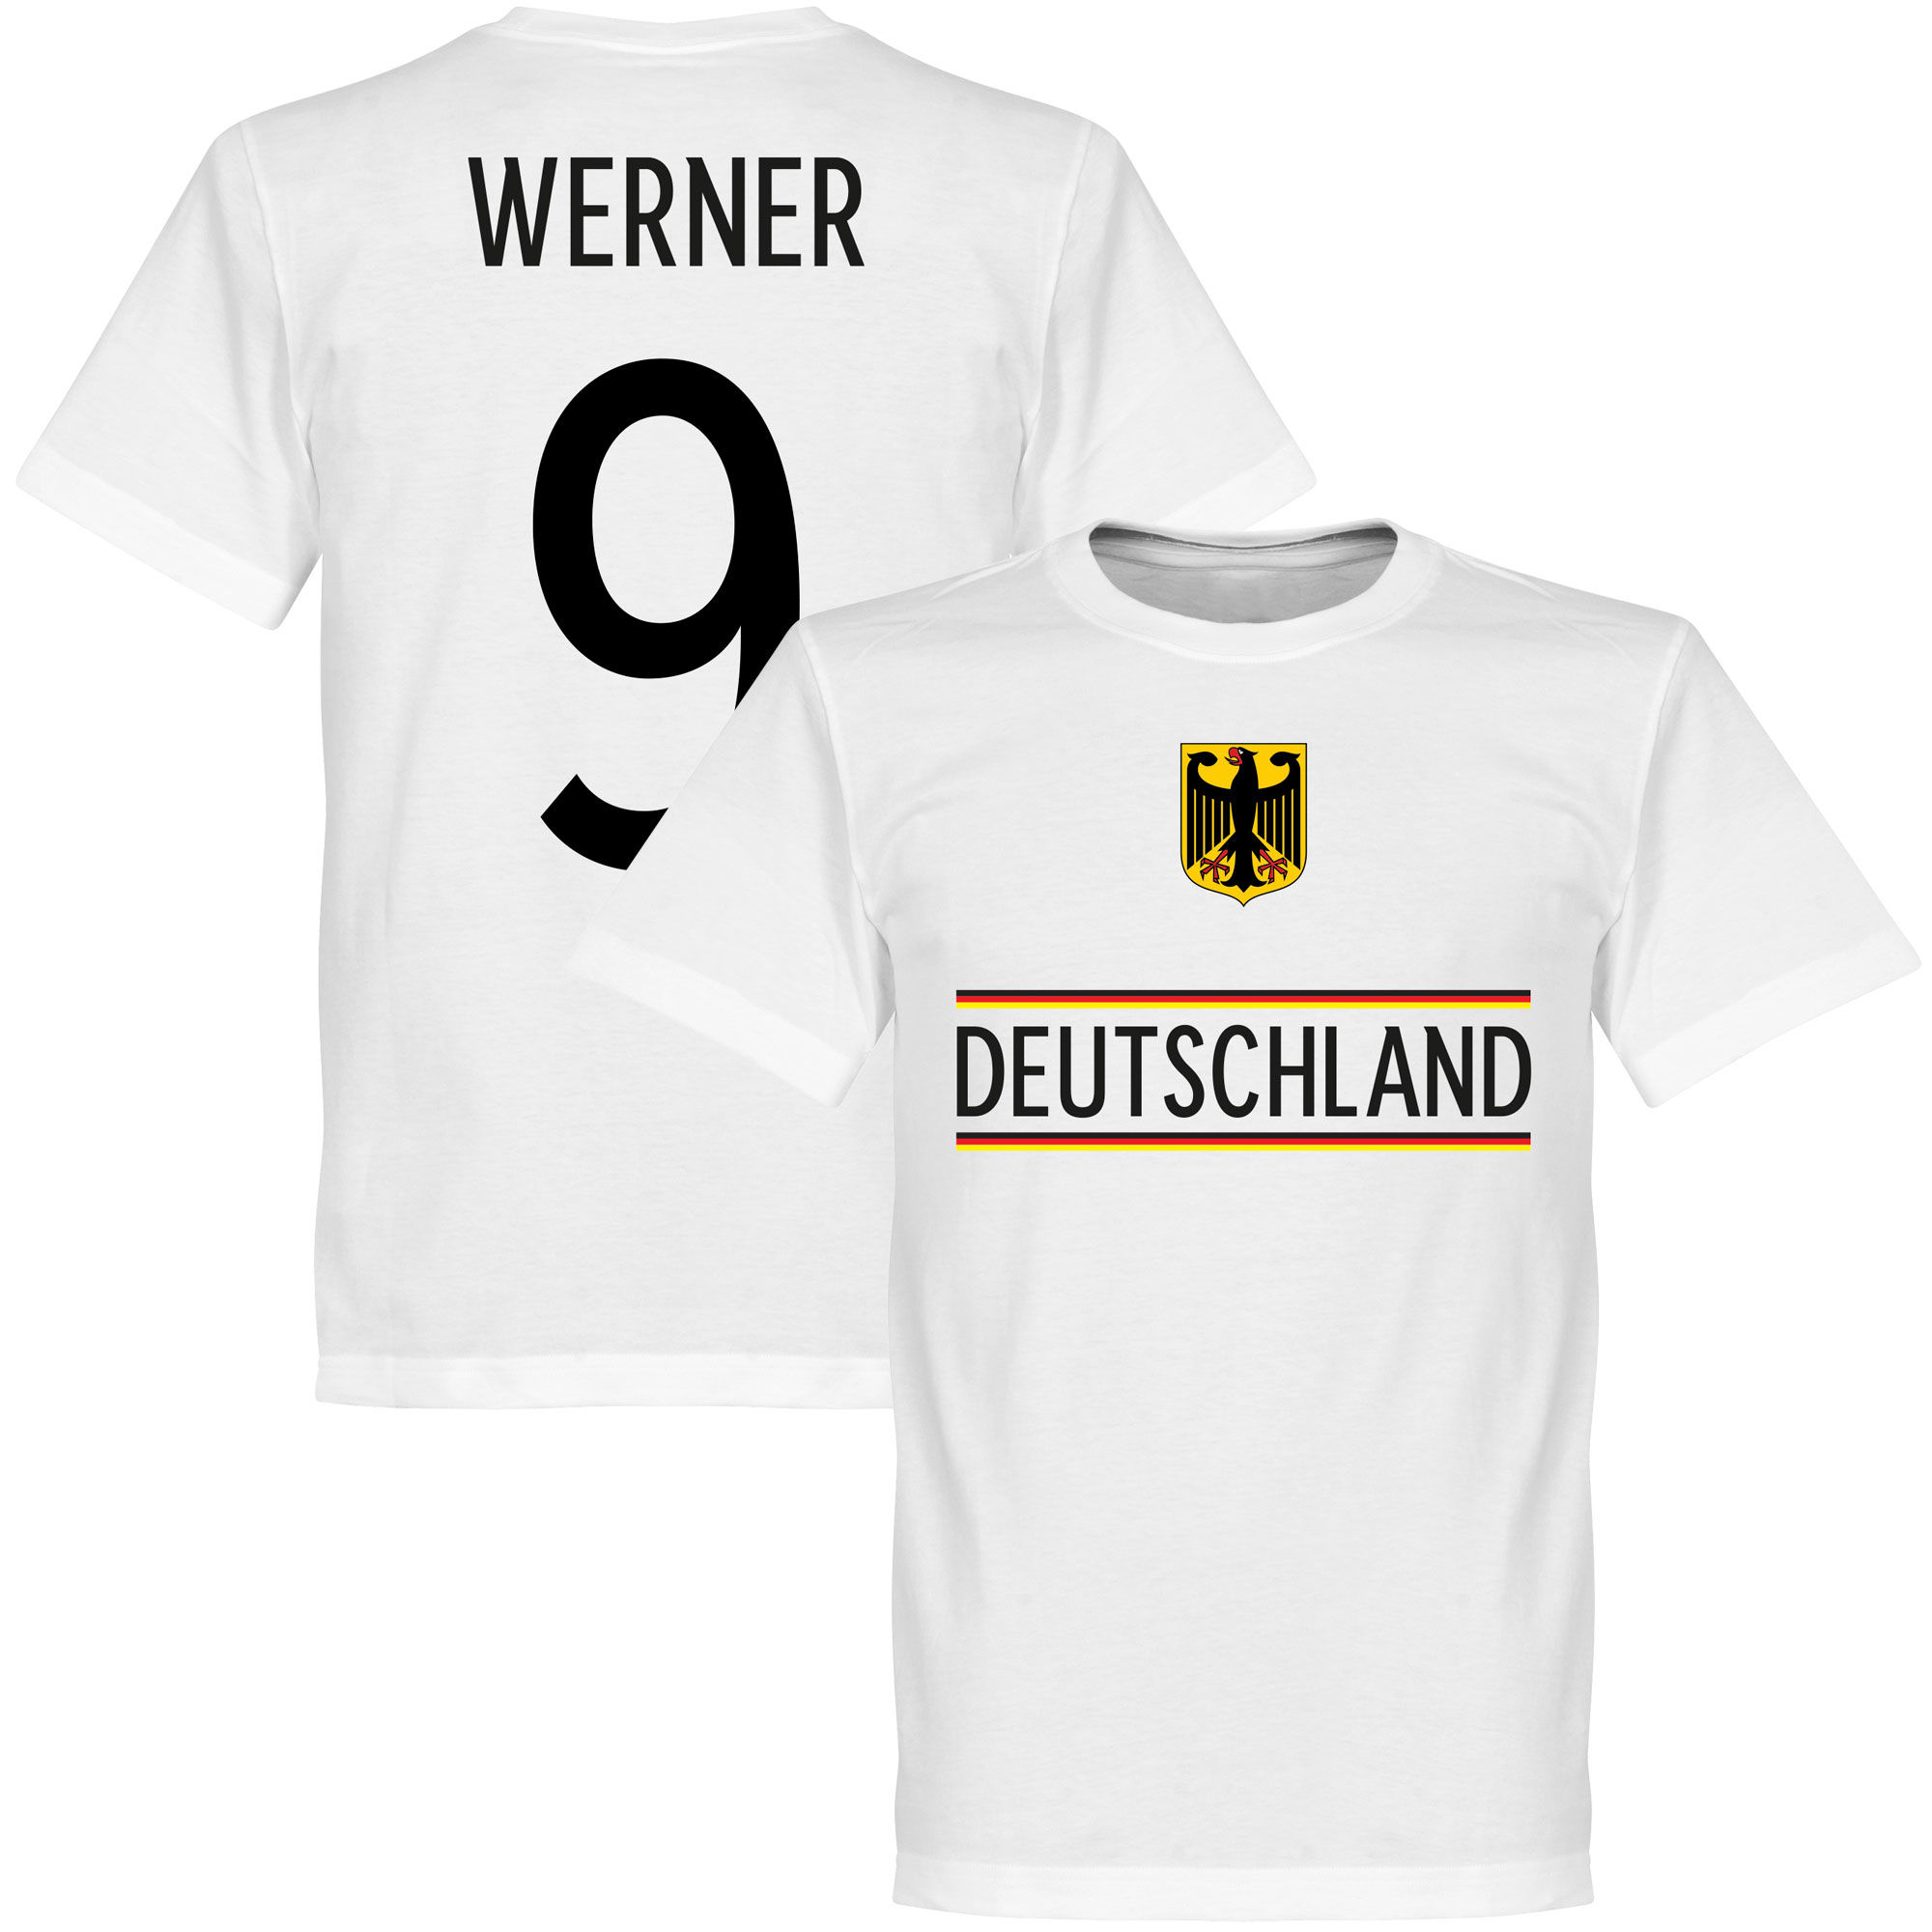 Německo - Tričko - Timo Werner, bílé, 2020, číslo 9